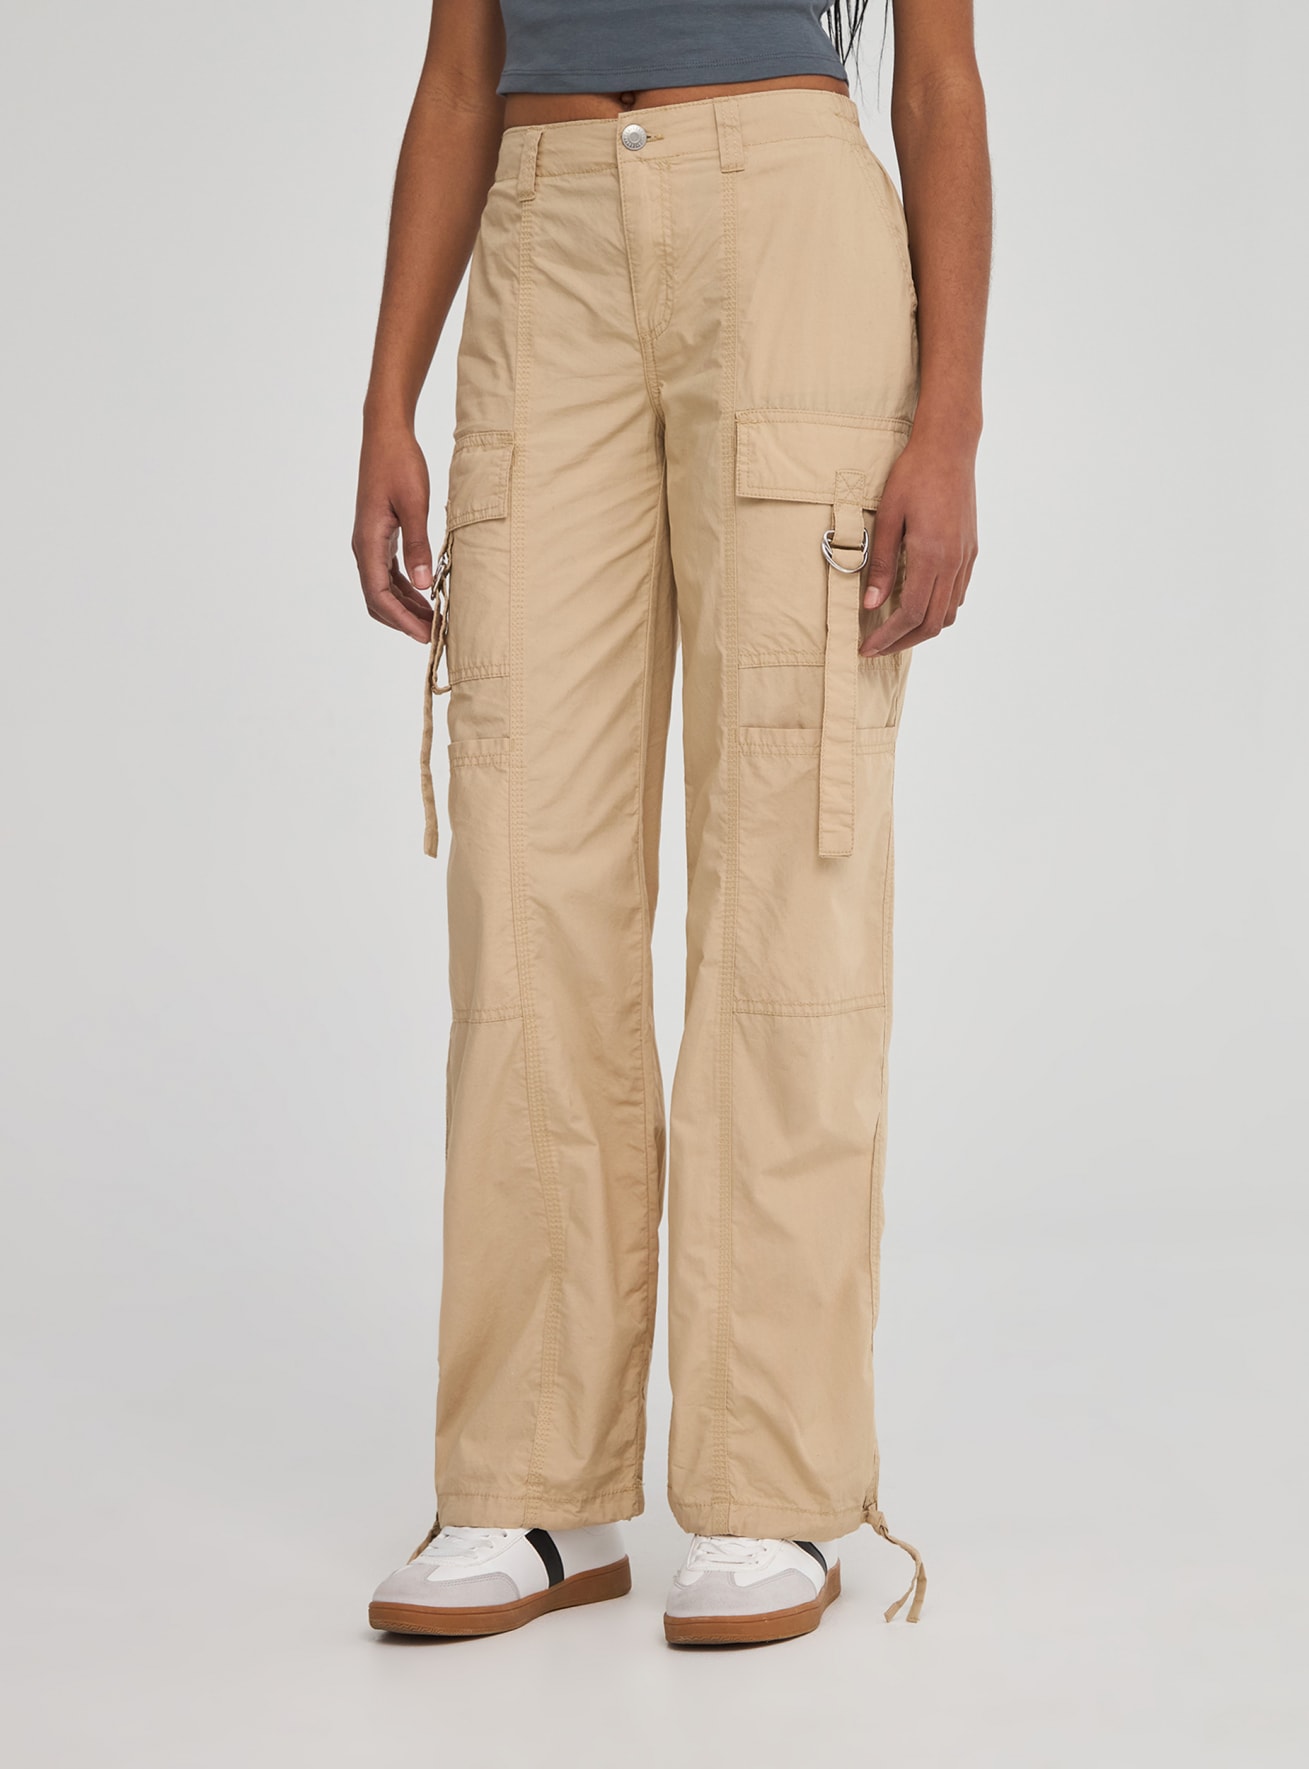 Pantalón cargo color liso beige | Terranova